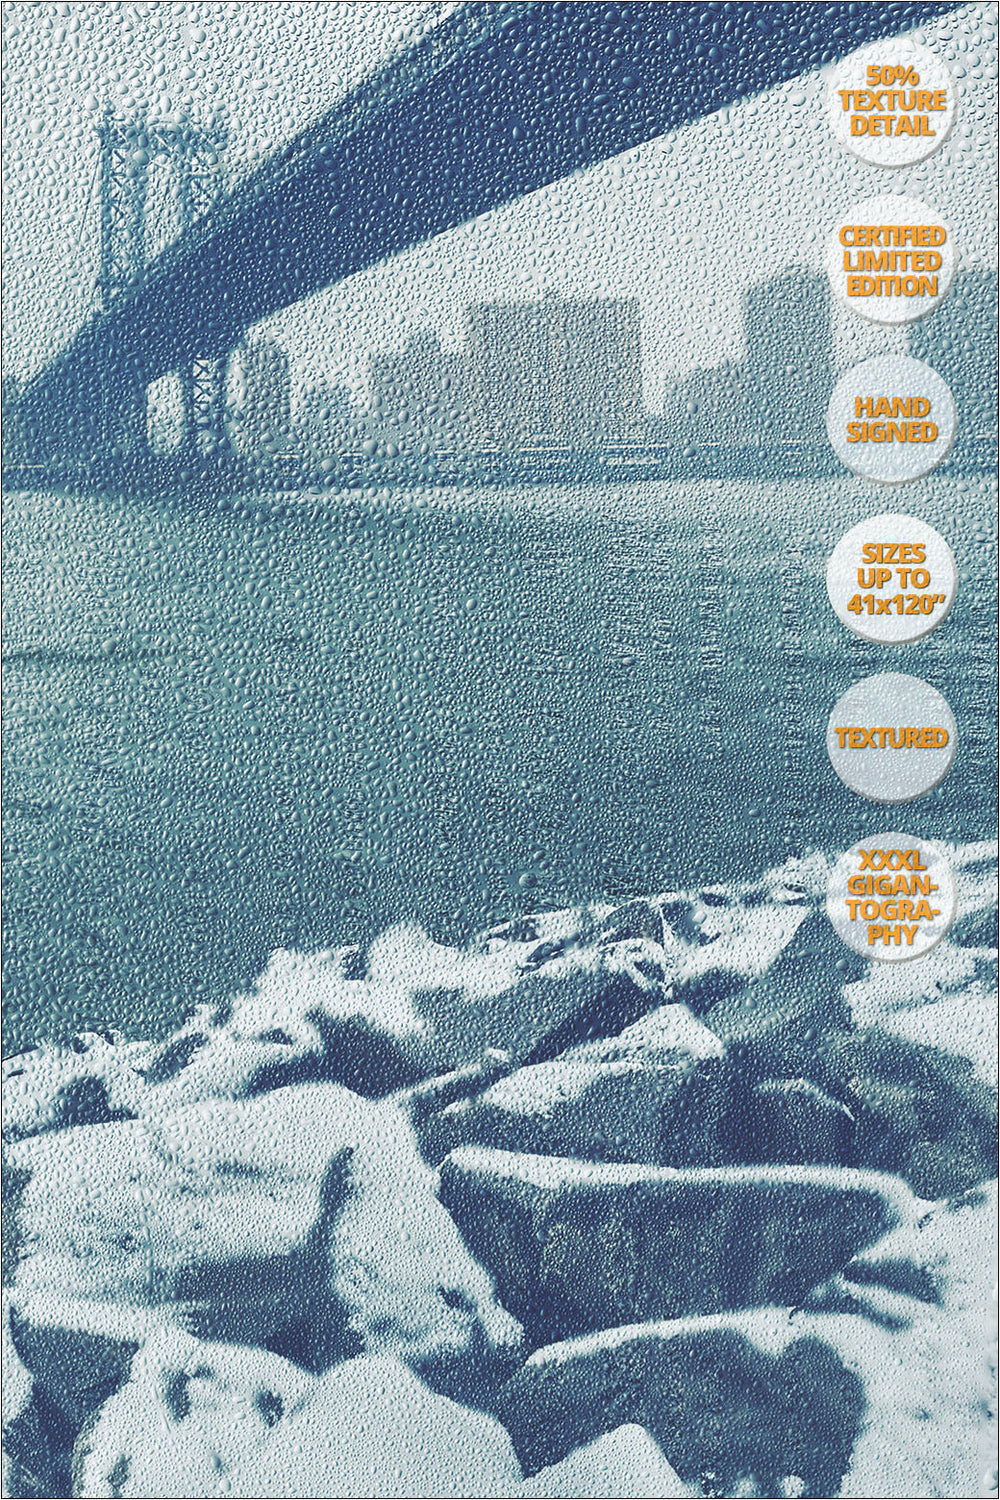 Manhattan Bridge in Blizzard, Winter, New York. | 50% Magnification Texture Detail.